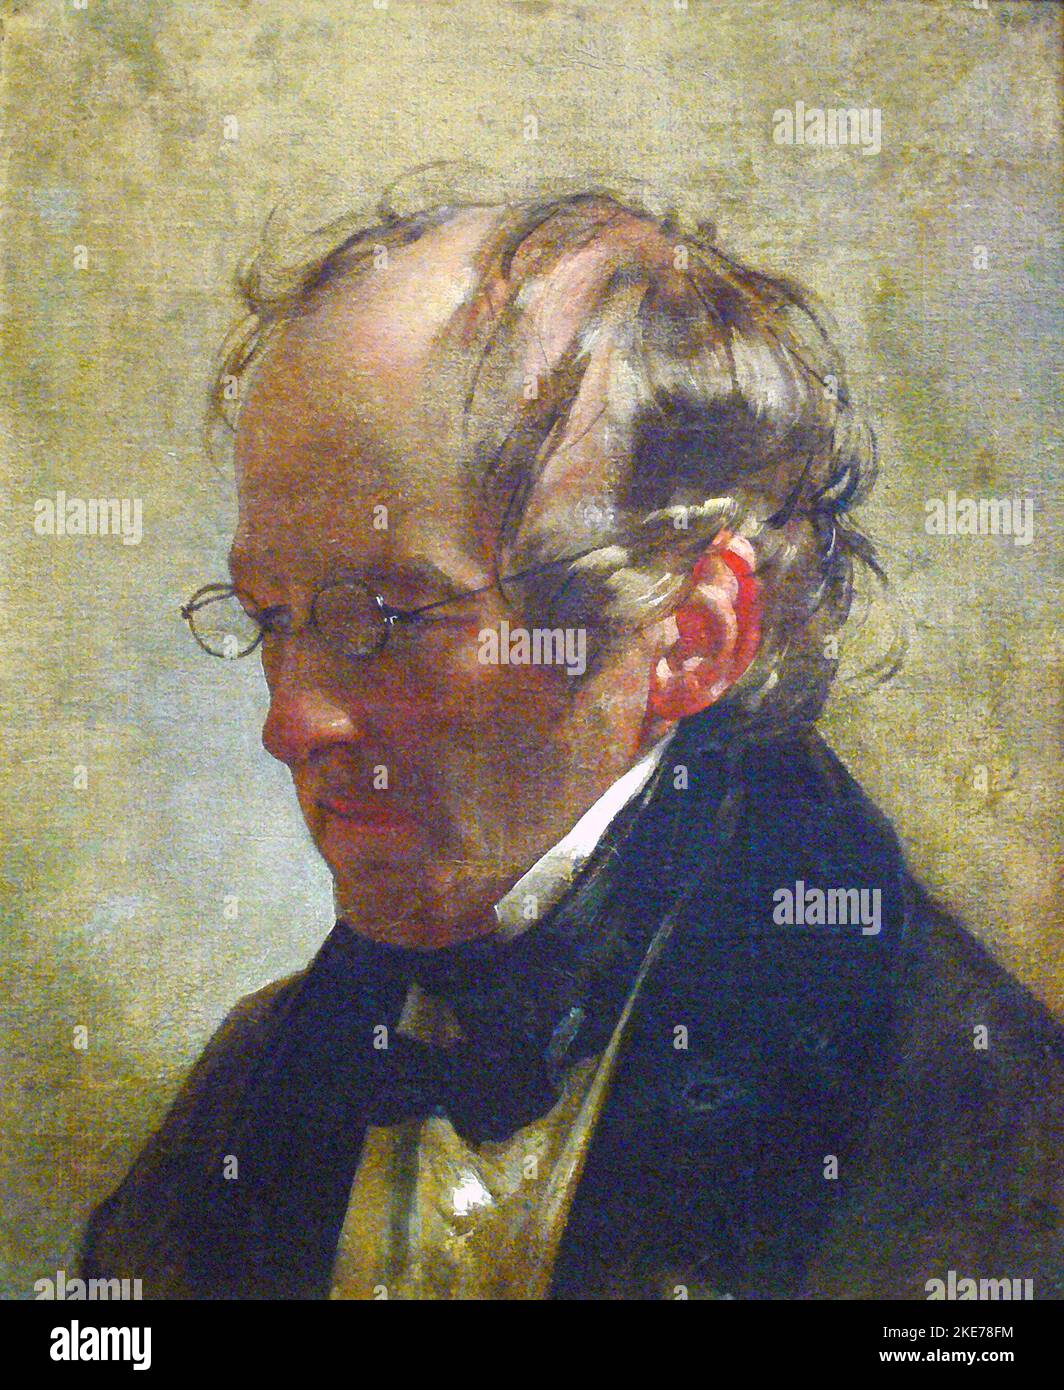 Carl Christian Vogel von Vogelstein, Ritratto di Friedrich von Amerling, 1837 Carl Christian Vogel von Vogelstein (1788 – 1868), pittore tedesco. Foto Stock